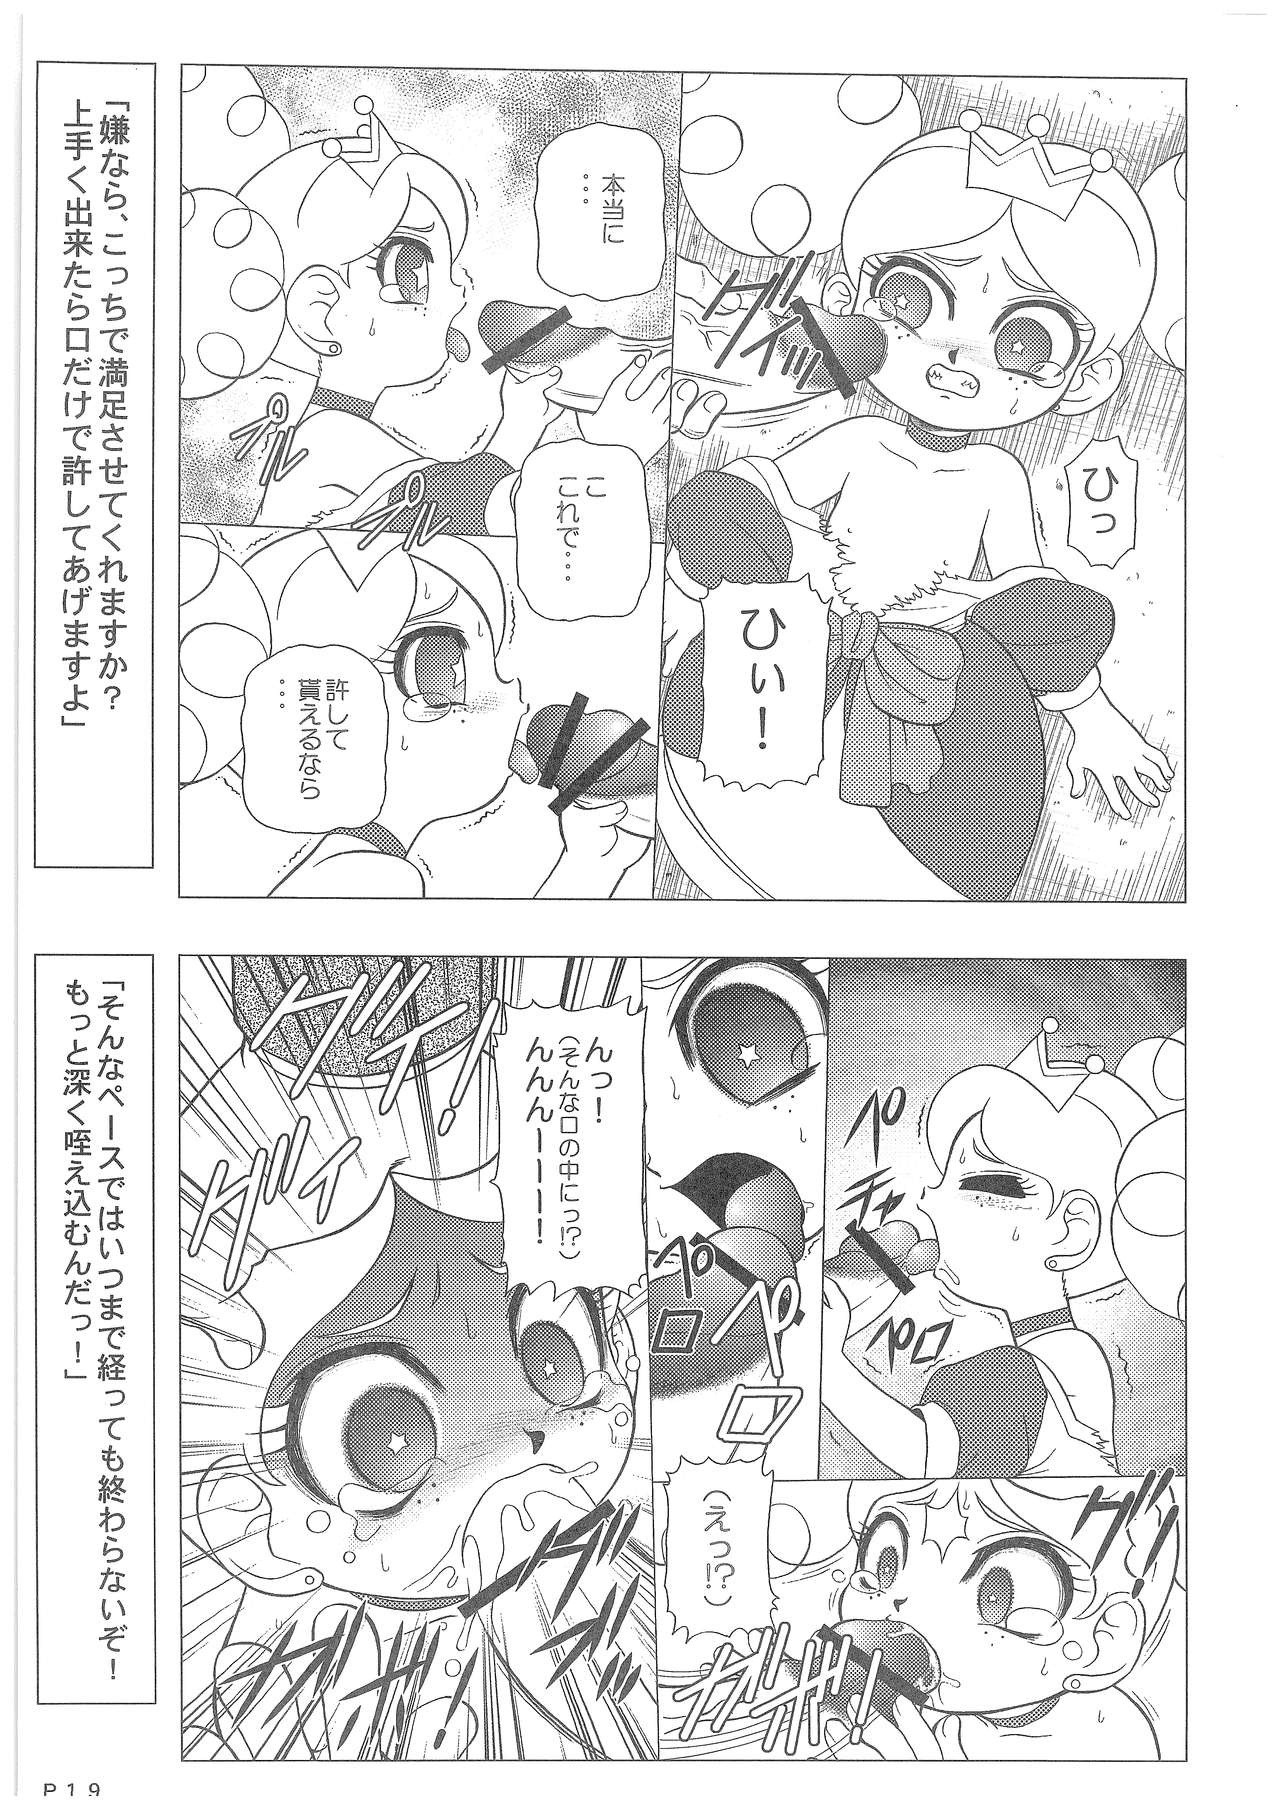 Power Puff Girls Z 001 hentai manga picture 17